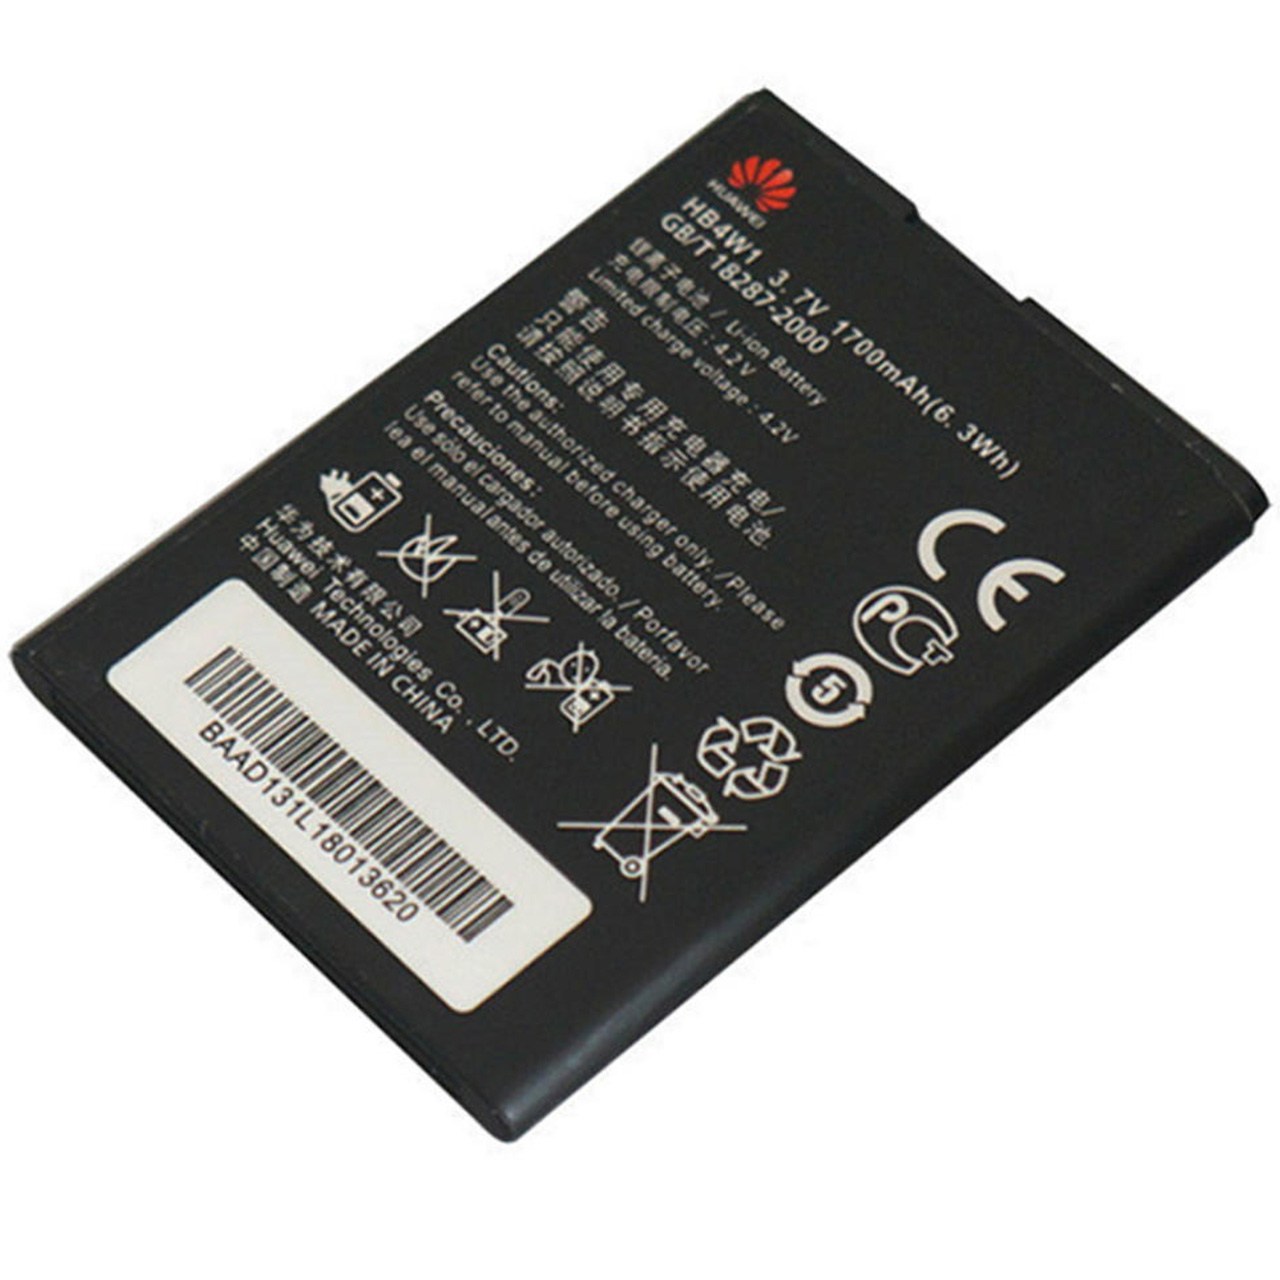 باتری موبایل مدل HB4W1 با ظرفیت 1700mAh مناسب برای گوشی موبایل هوآوی G520/530